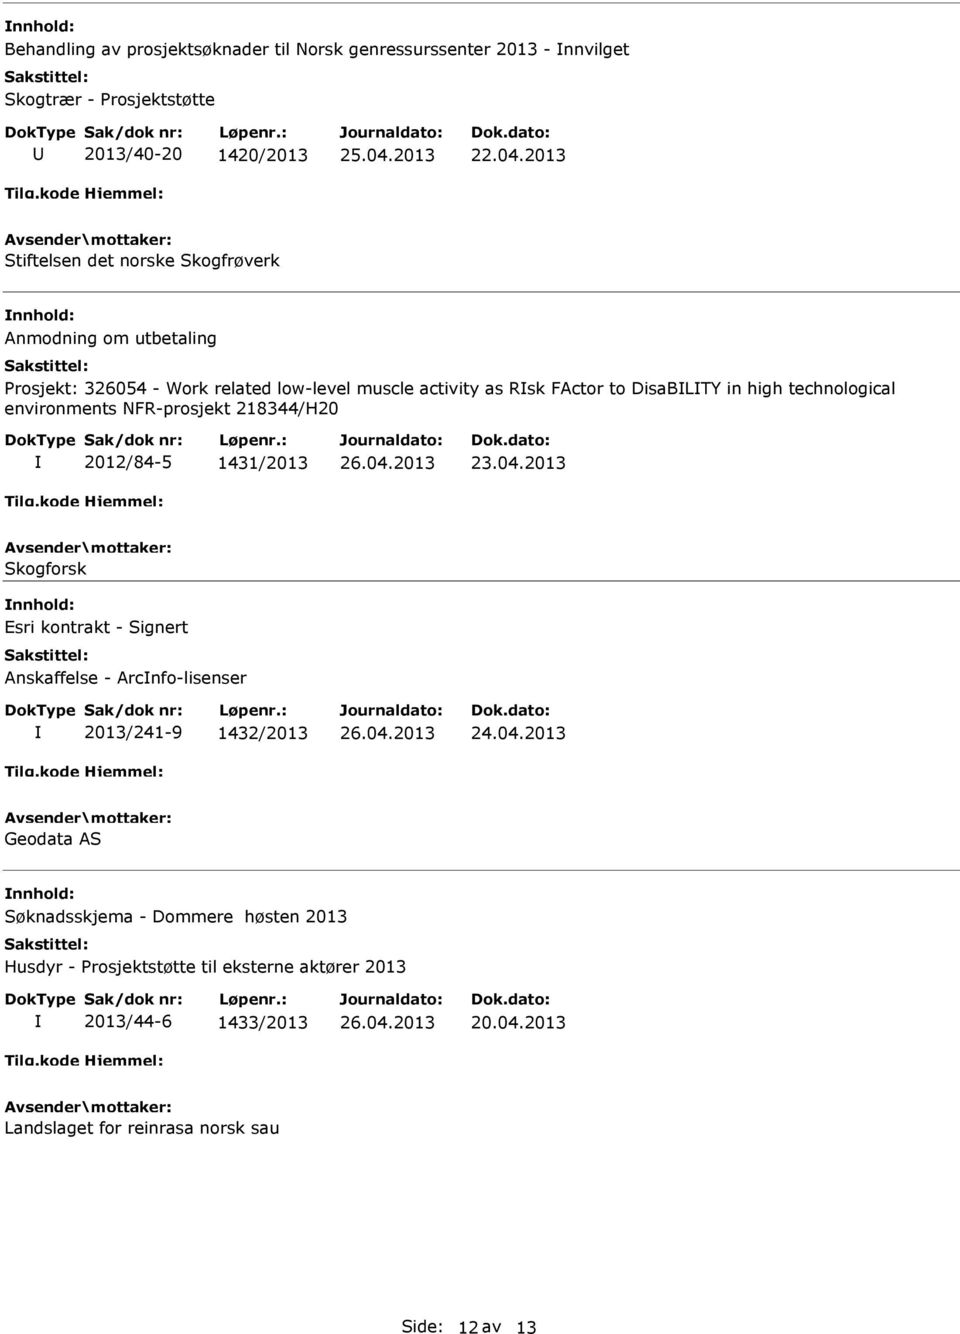 2013 Skogforsk Esri kontrakt - Signert Anskaffelse - Arcnfo-lisenser 2013/241-9 1432/2013 26.04.